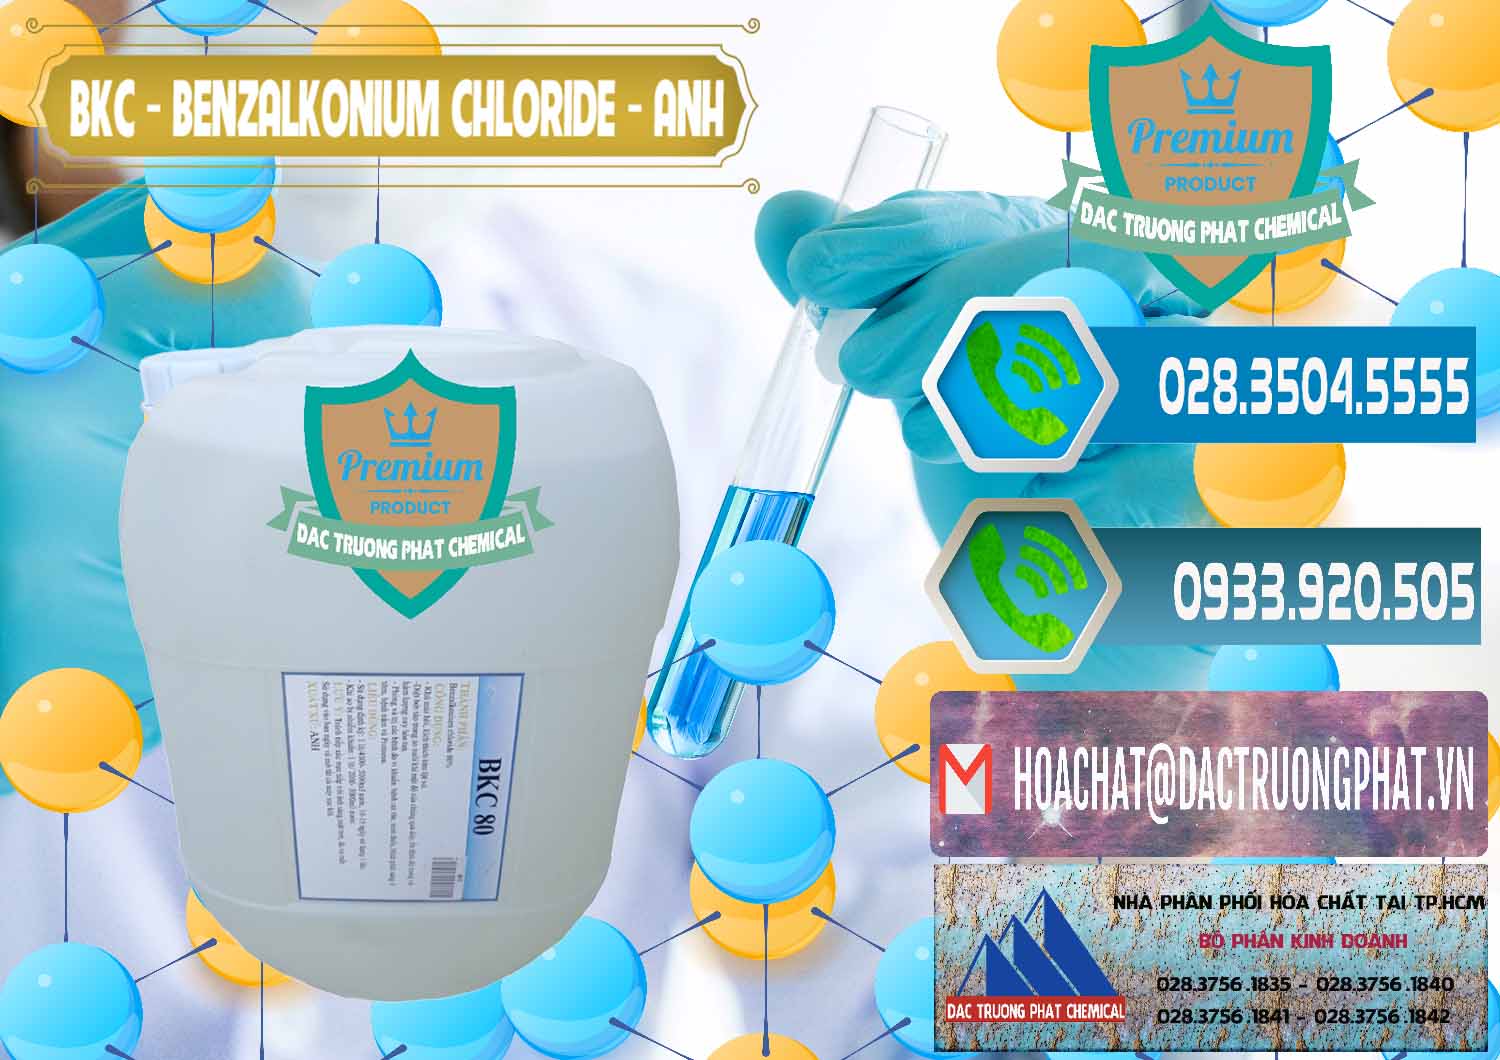 Công ty chuyên kinh doanh _ bán BKC - Benzalkonium Chloride Anh Quốc Uk Kingdoms - 0415 - Nơi chuyên cung cấp và kinh doanh hóa chất tại TP.HCM - congtyhoachat.net